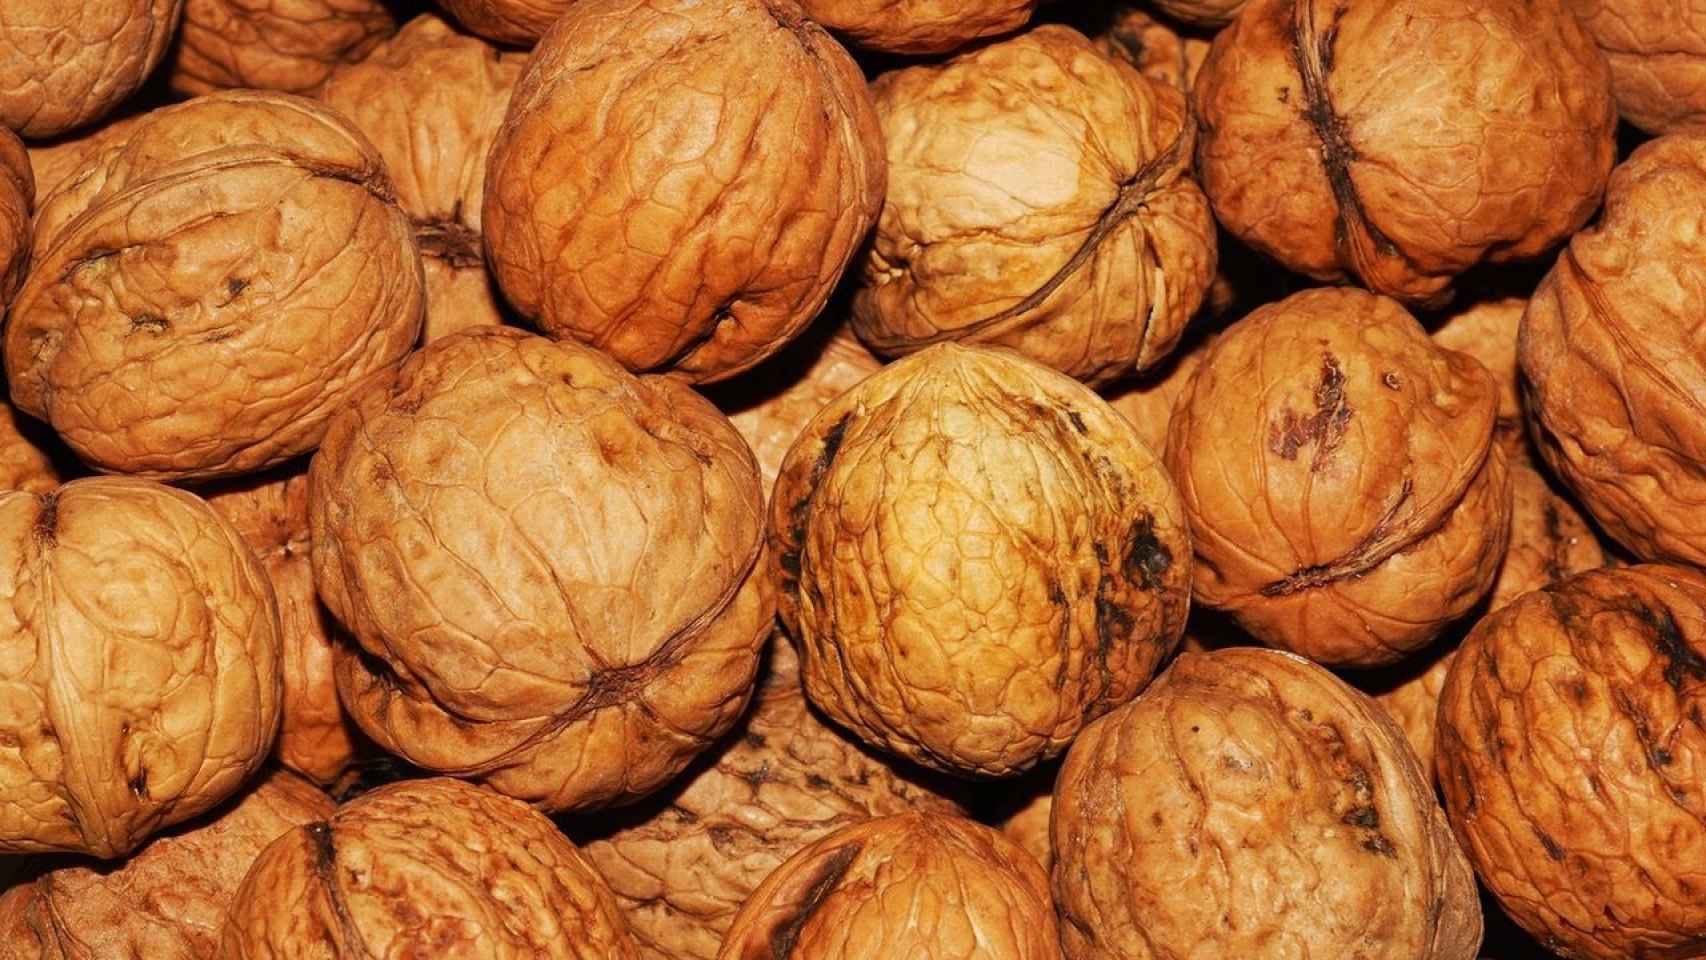 Comer dos nueces al día reduce el riesgo de cáncer de colon